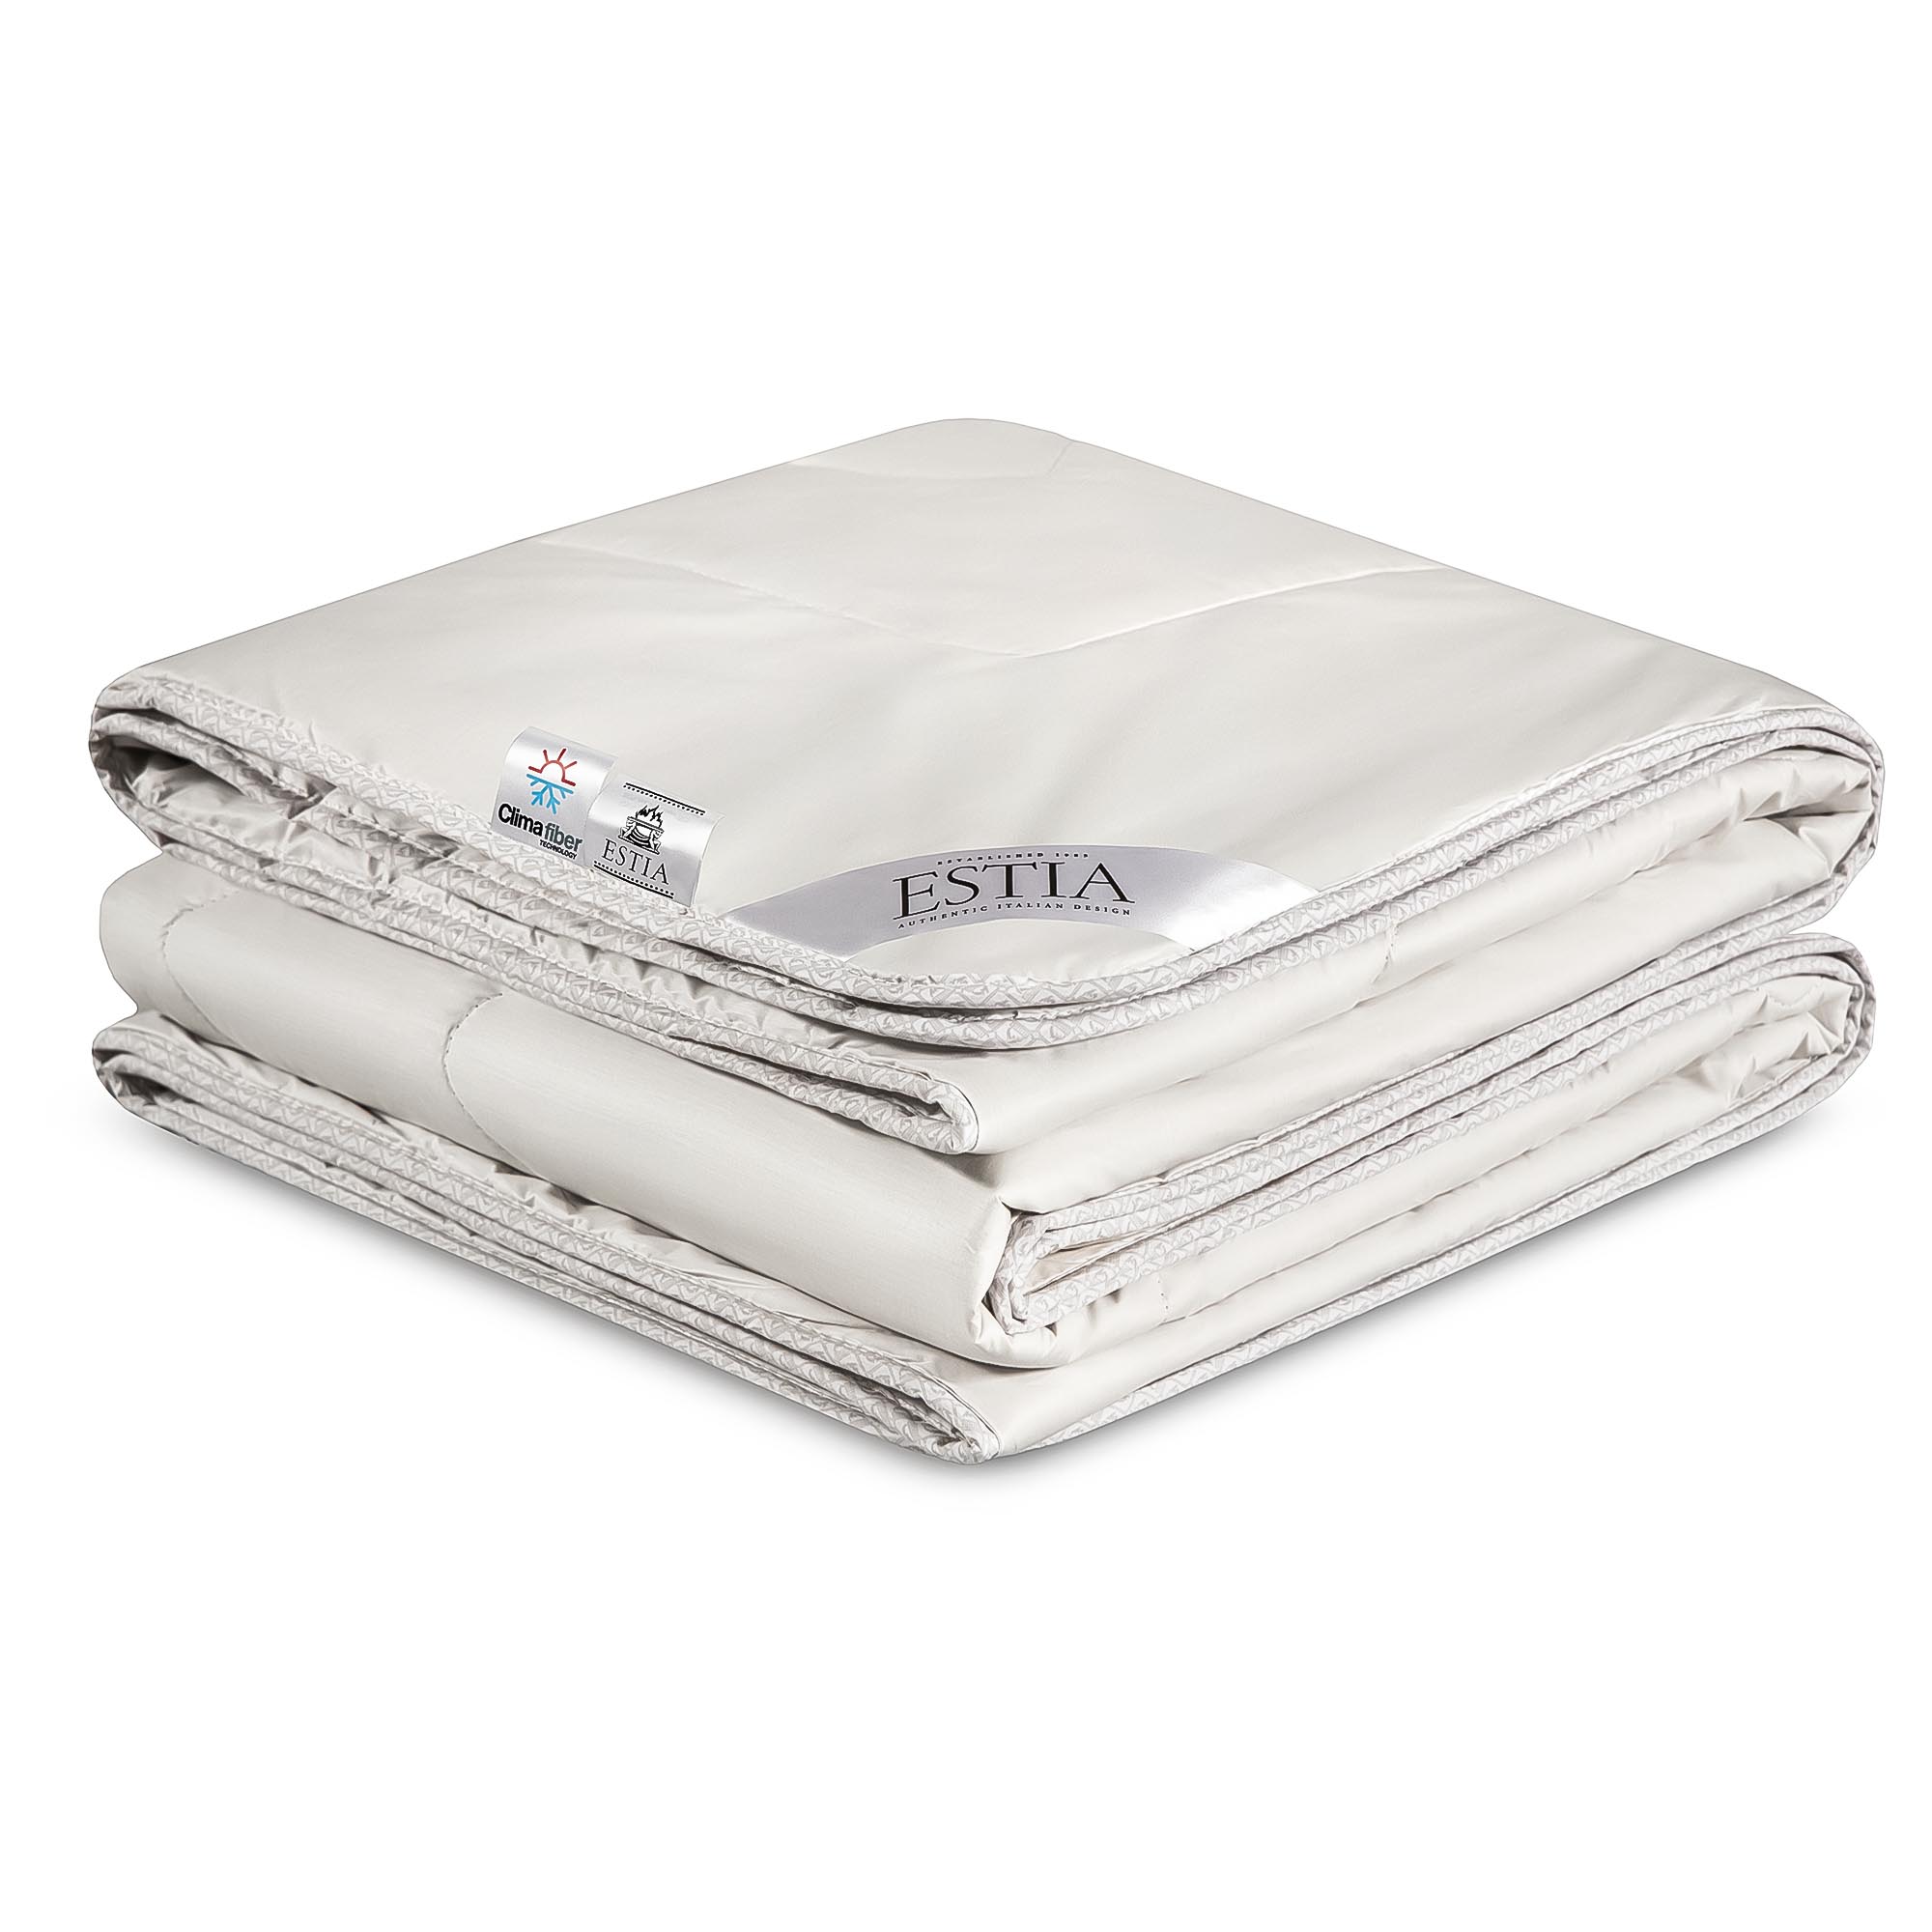 Одеяло Estia Монте Кальво белое 200х210 см (99.62.82.0001) одеяло estia селеста премиум 200х210 см